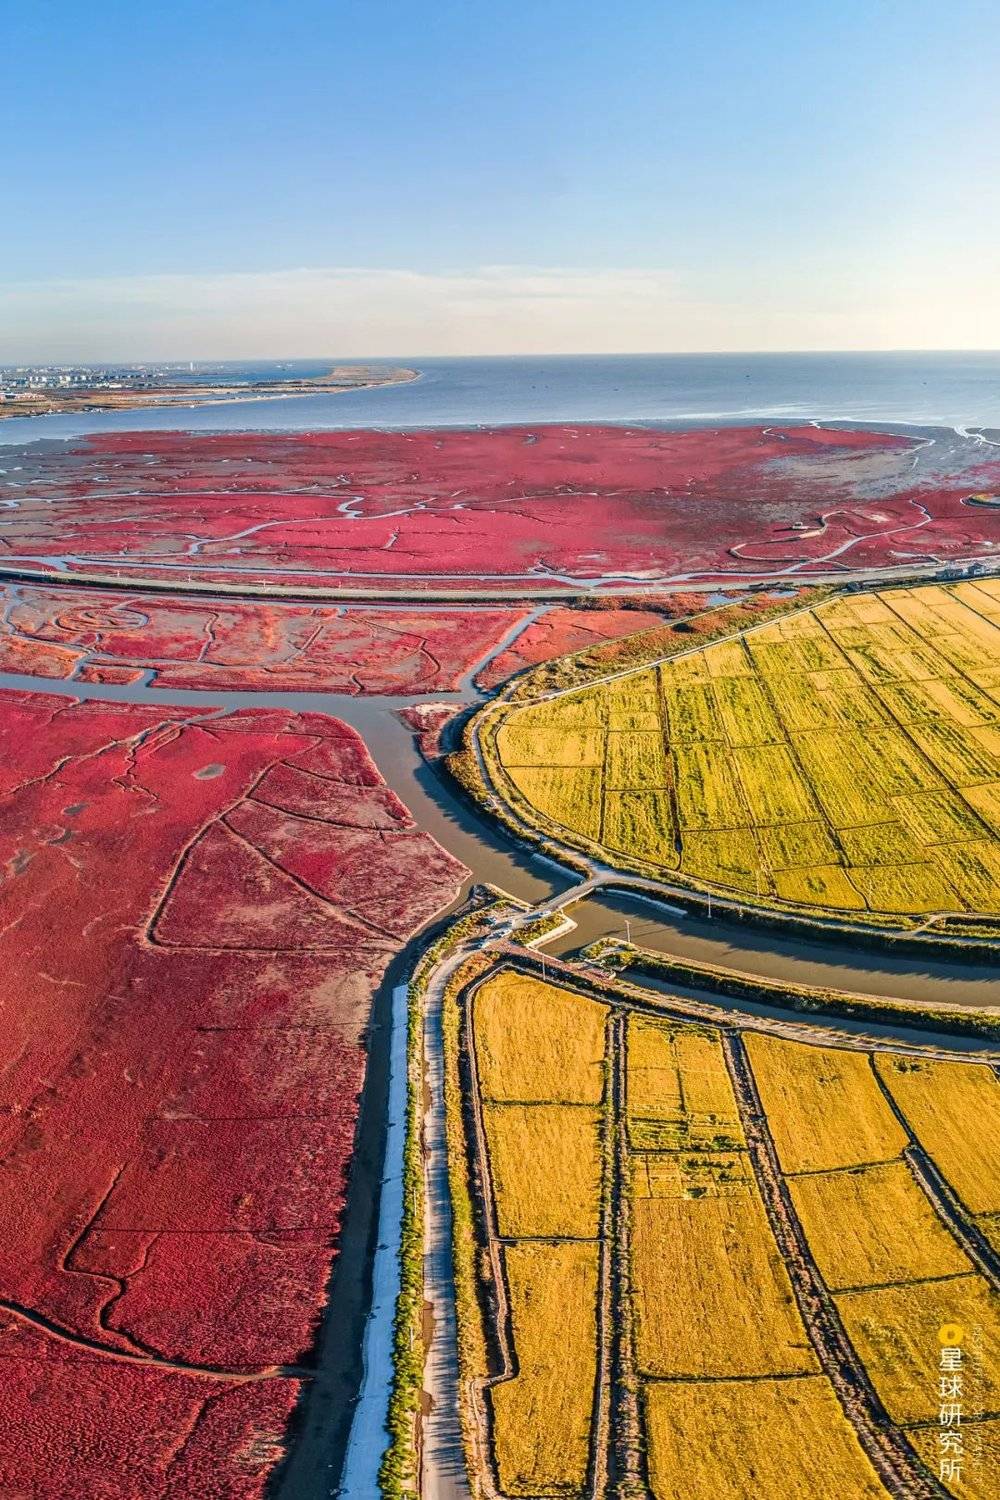 （辽河入海口附近，一边是红色的碱蓬草，一边是黄色的水稻，摄影师@周昫光）